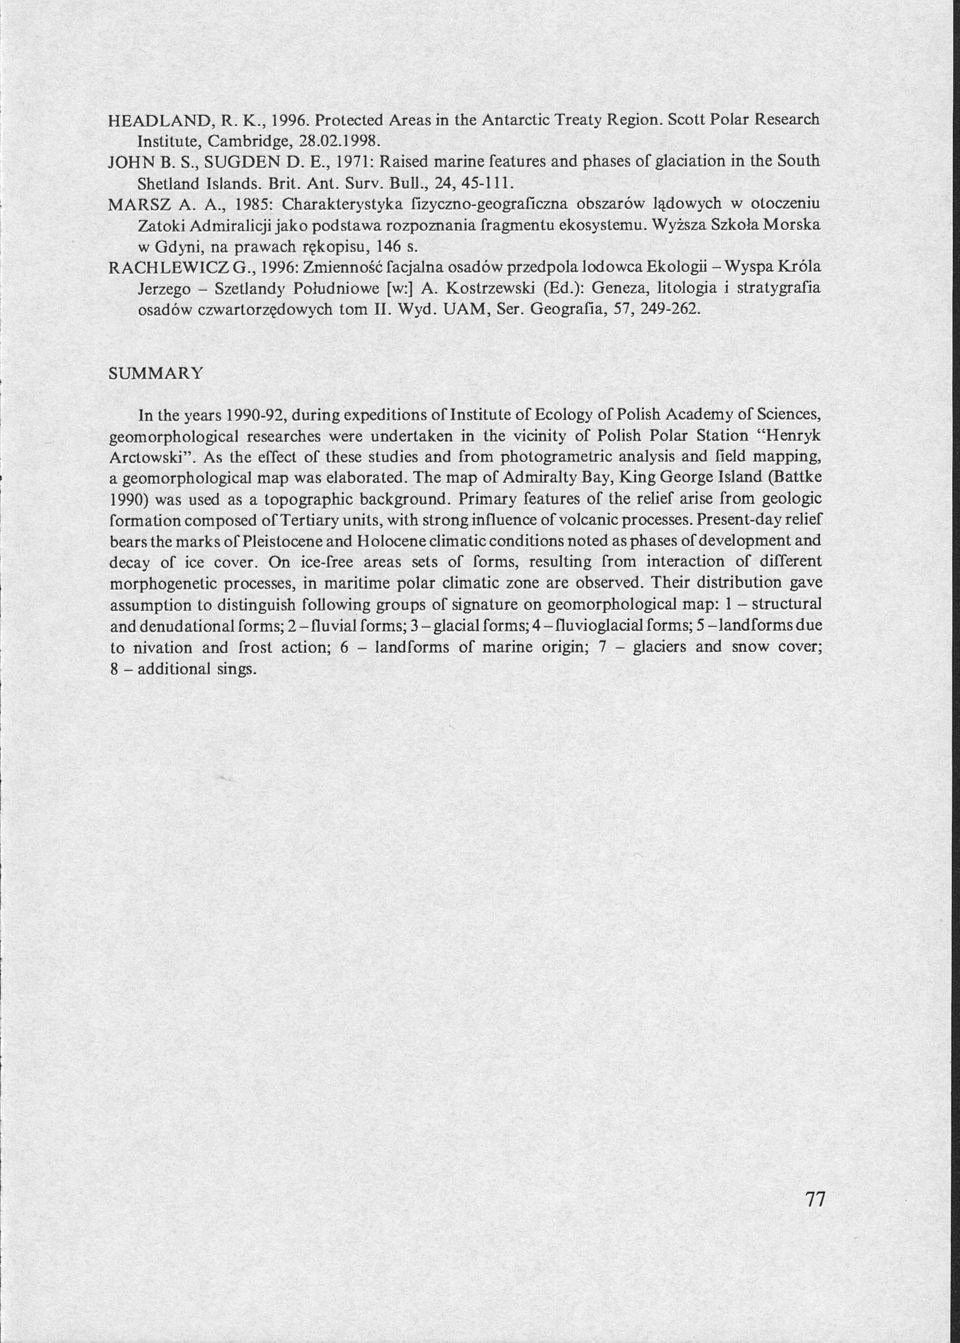 t. Surv. Bull., 24, 45-111. MARSZ A. A., 1985: Charakterystyka fizyczno-geograficzna obszarów lądowych w otoczeniu Zatoki Admiralicji jako podstawa rozpoznania fragmentu ekosystemu.